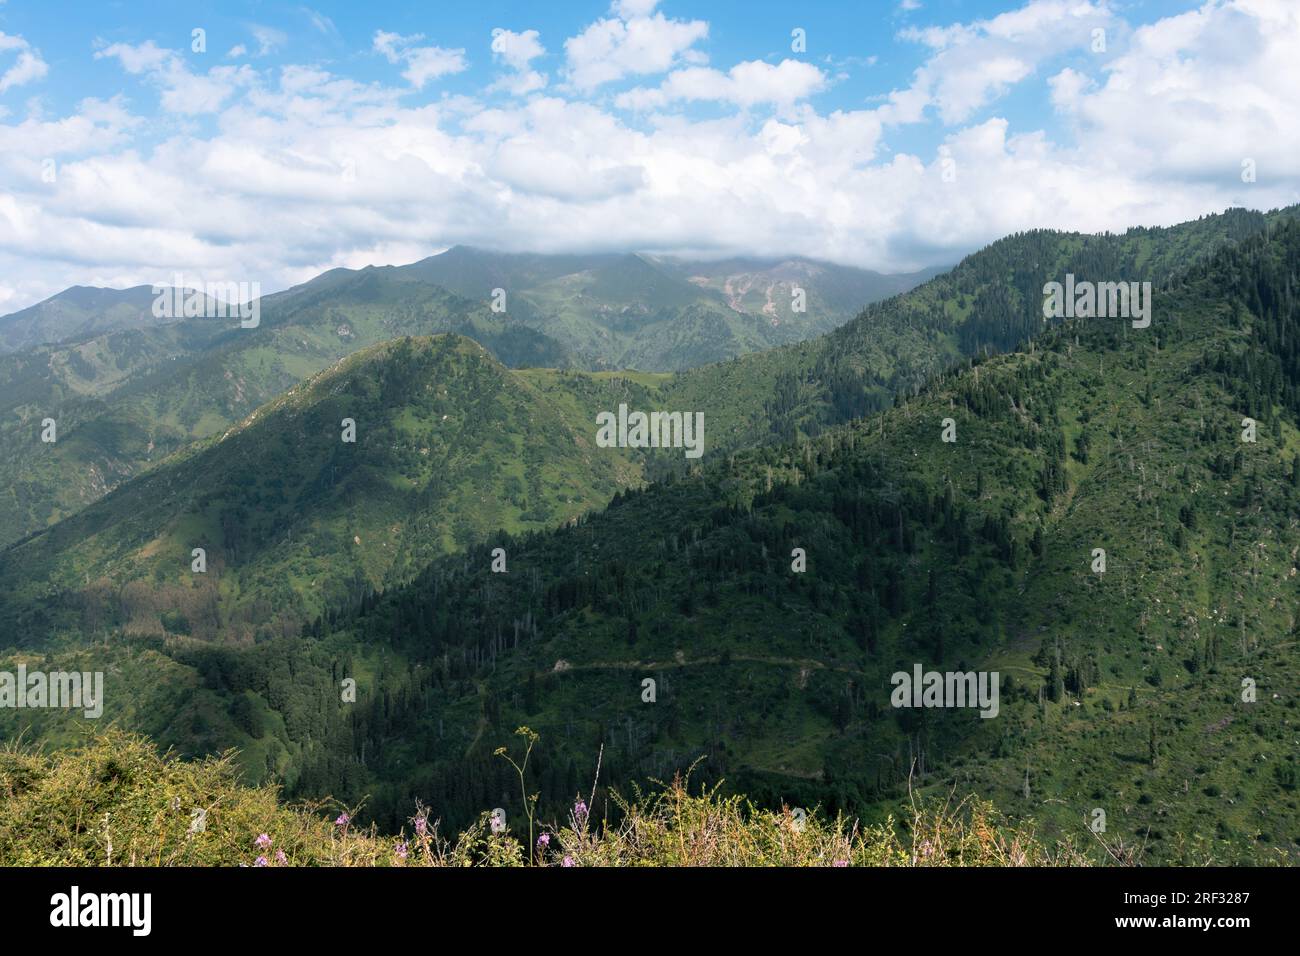 Paesaggi montuosi con verdi colline e un cielo azzurro con nuvole sparse Foto Stock